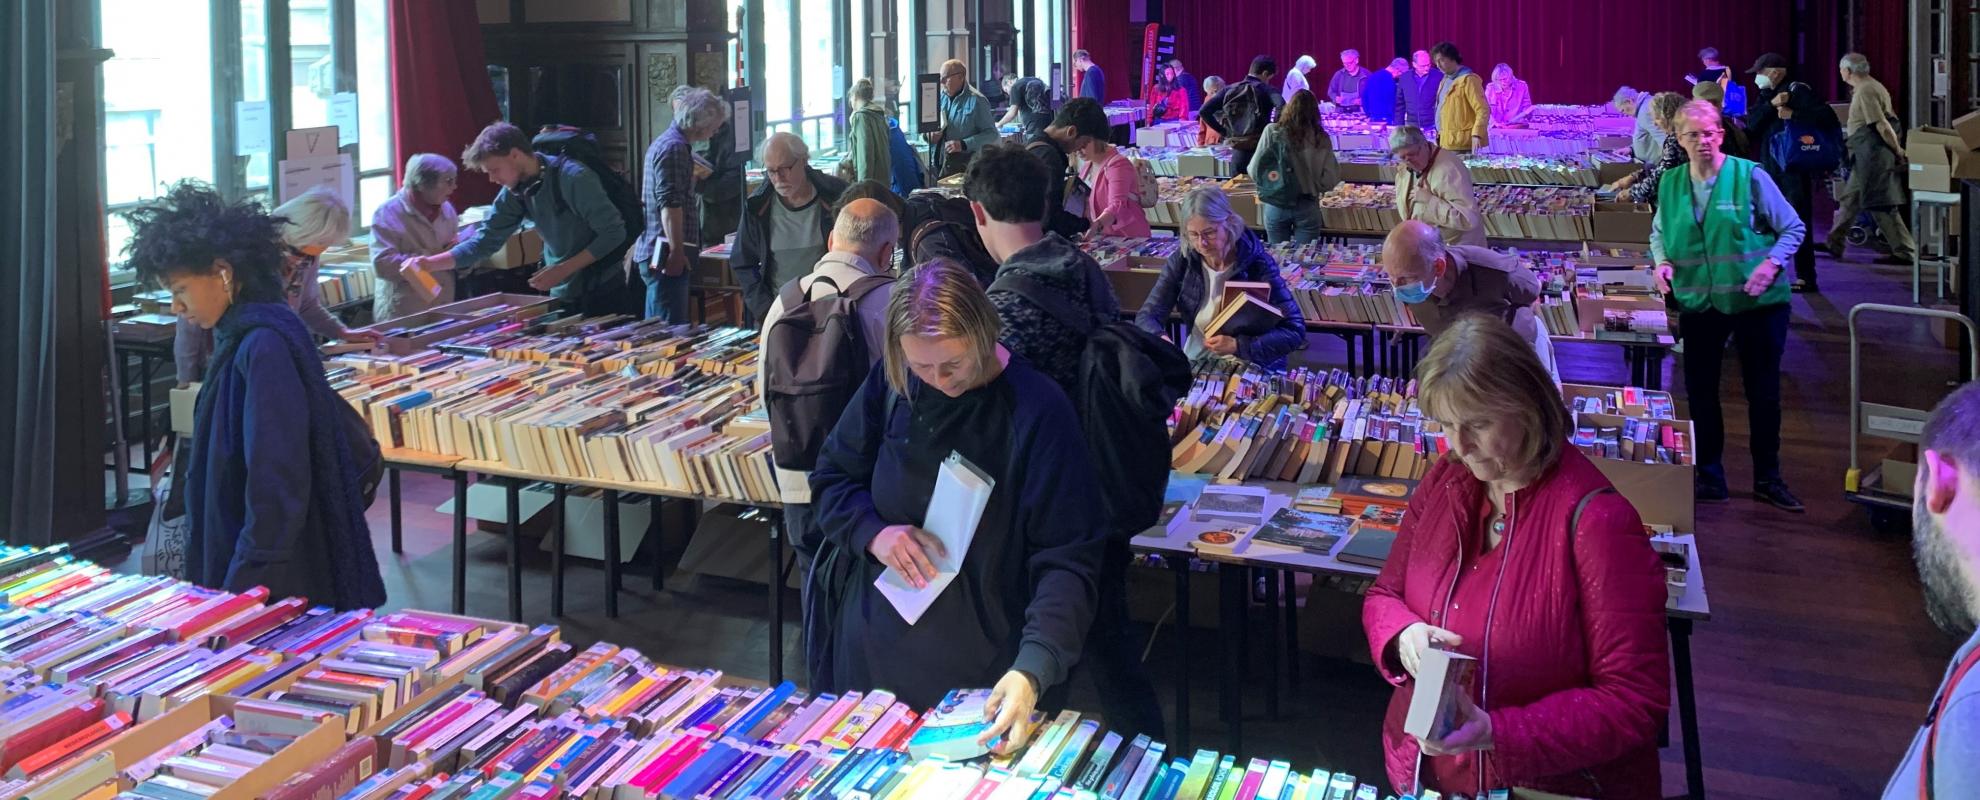 Mensen kiezen hun boek tijdens de boekenverkoop in Gent